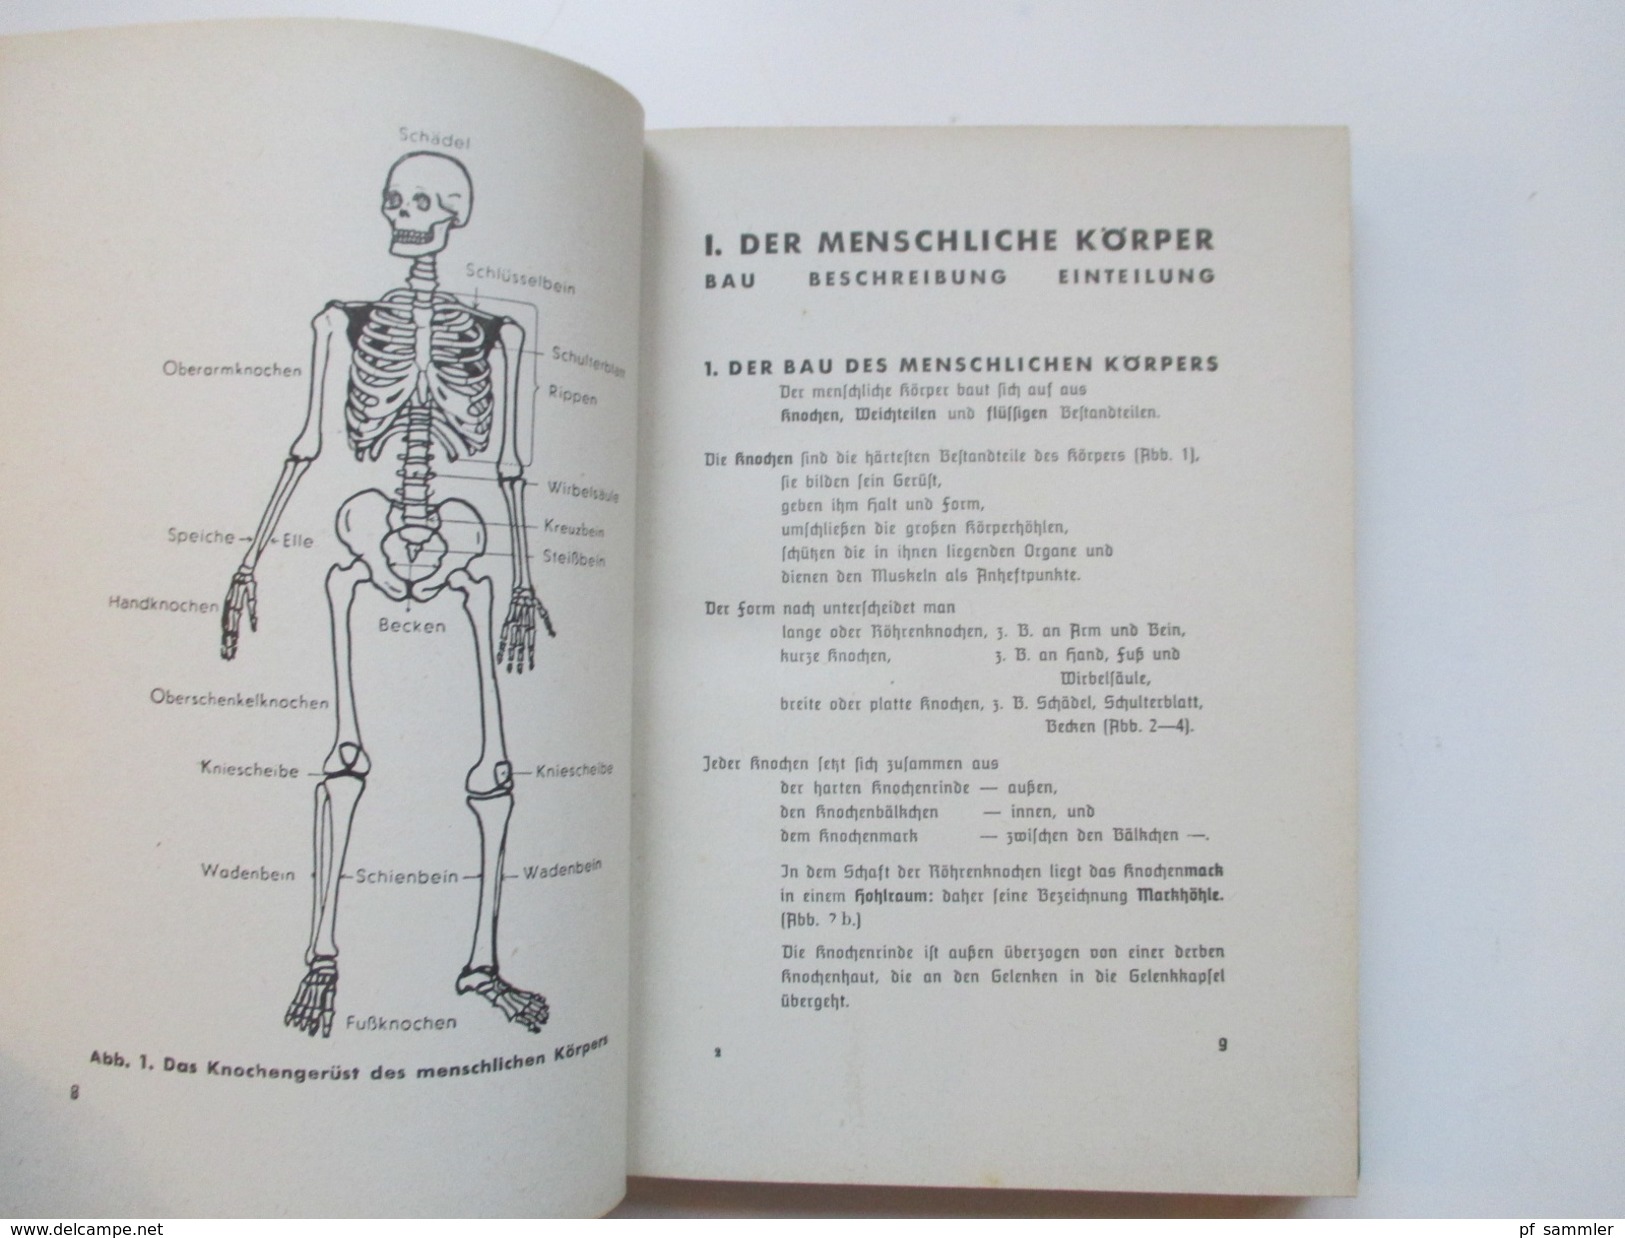 Amtliches Unterrichtsbuch über Erste Hilfe. 1939 Rotes Kreuz / Wehrmacht.Dr. Med. Richard Krueger SS Obersturmbandführer